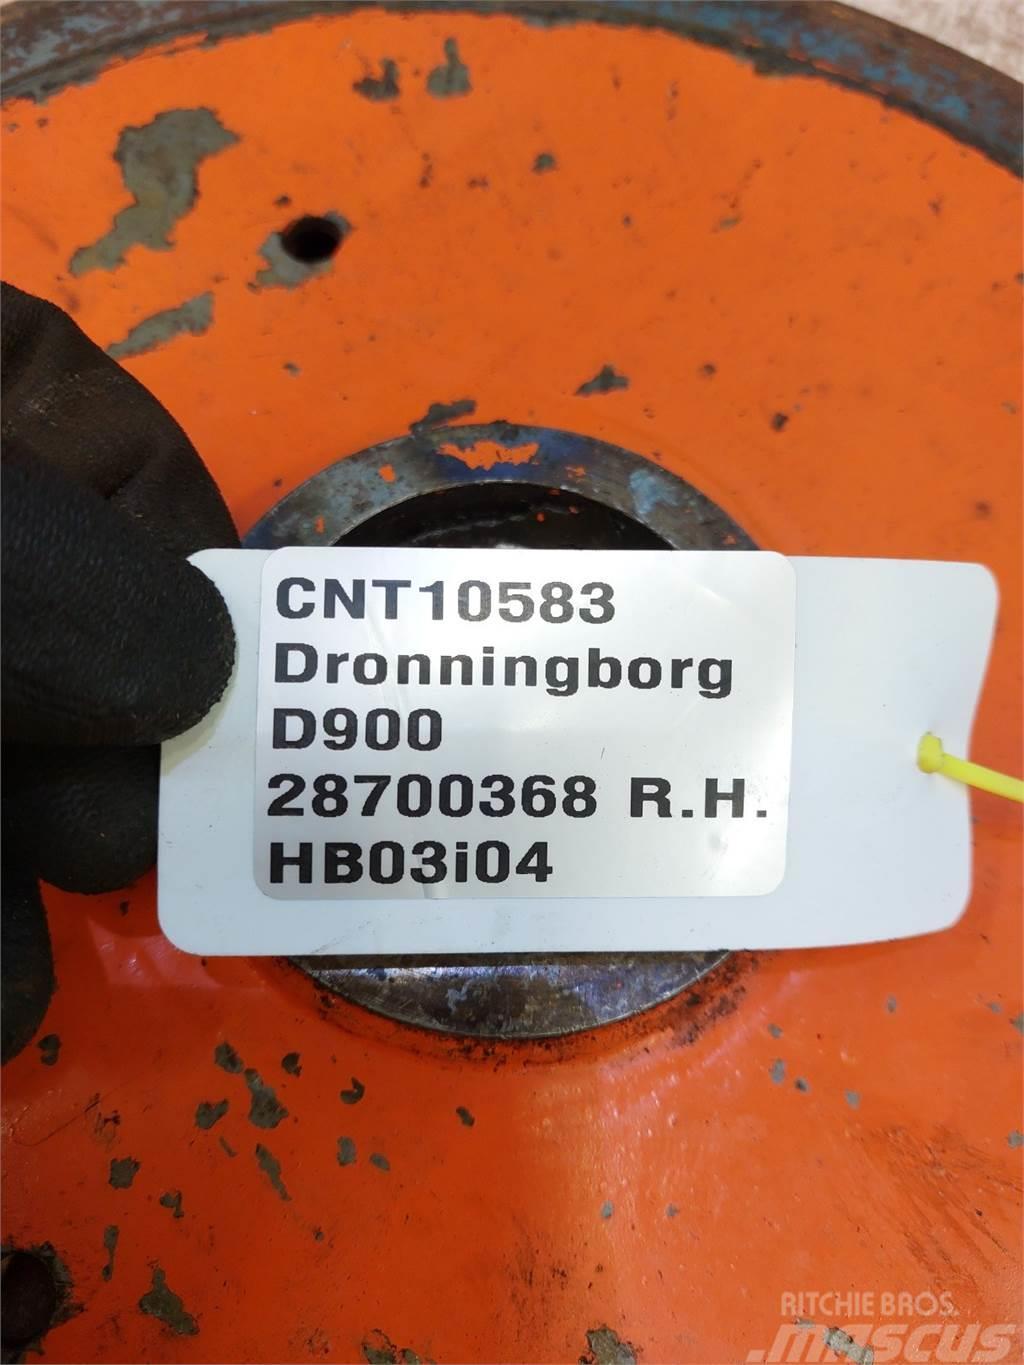 Dronningborg D900 Ostali poljoprivredni strojevi